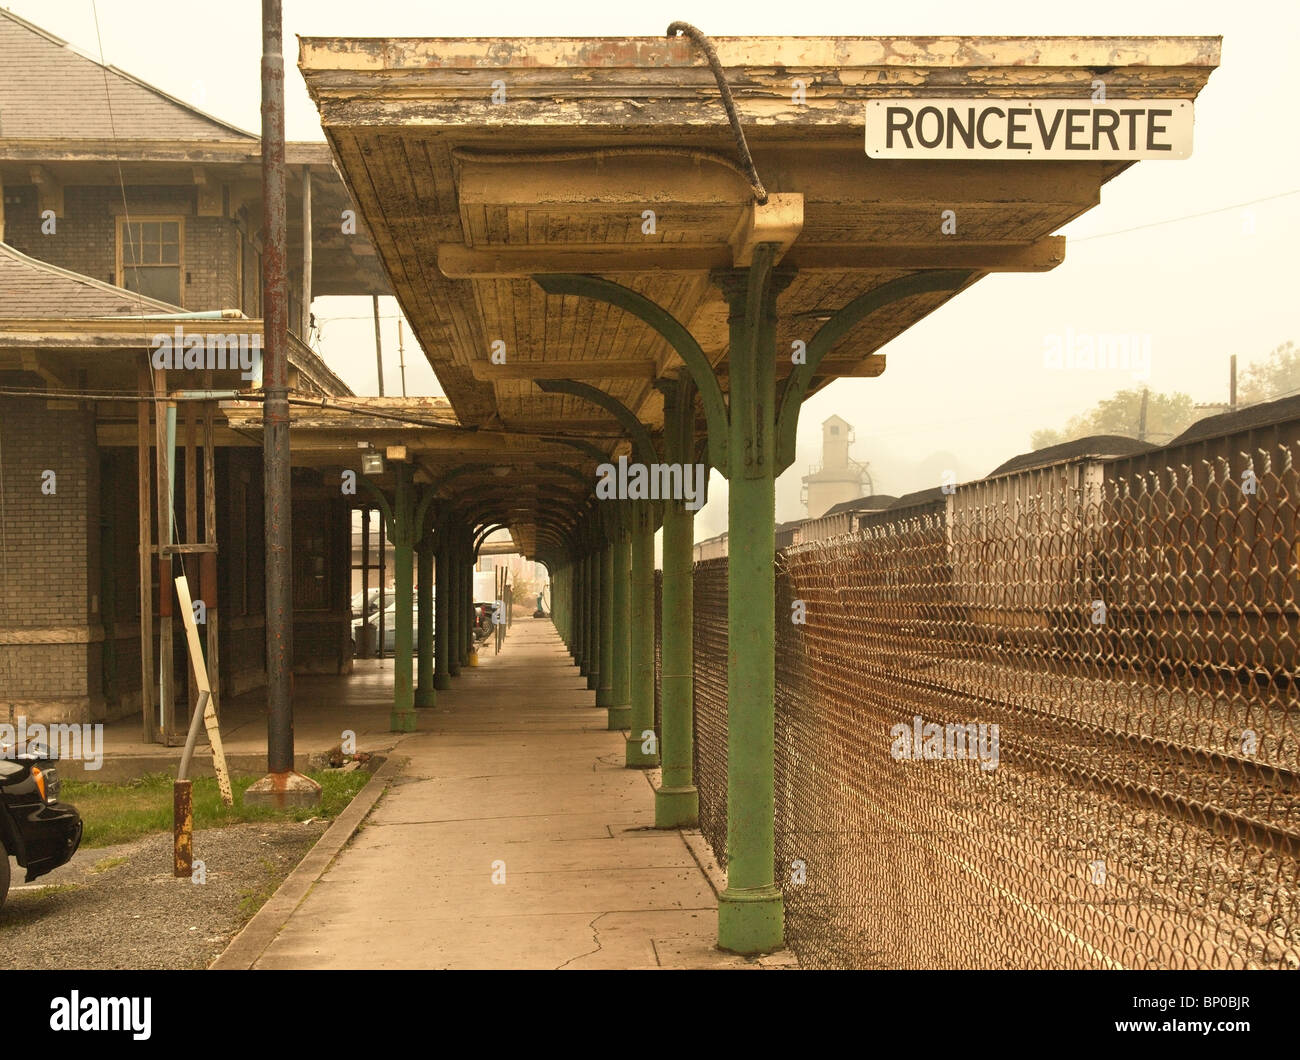 Abandoned Train Station of Ronceverte Stock Photo